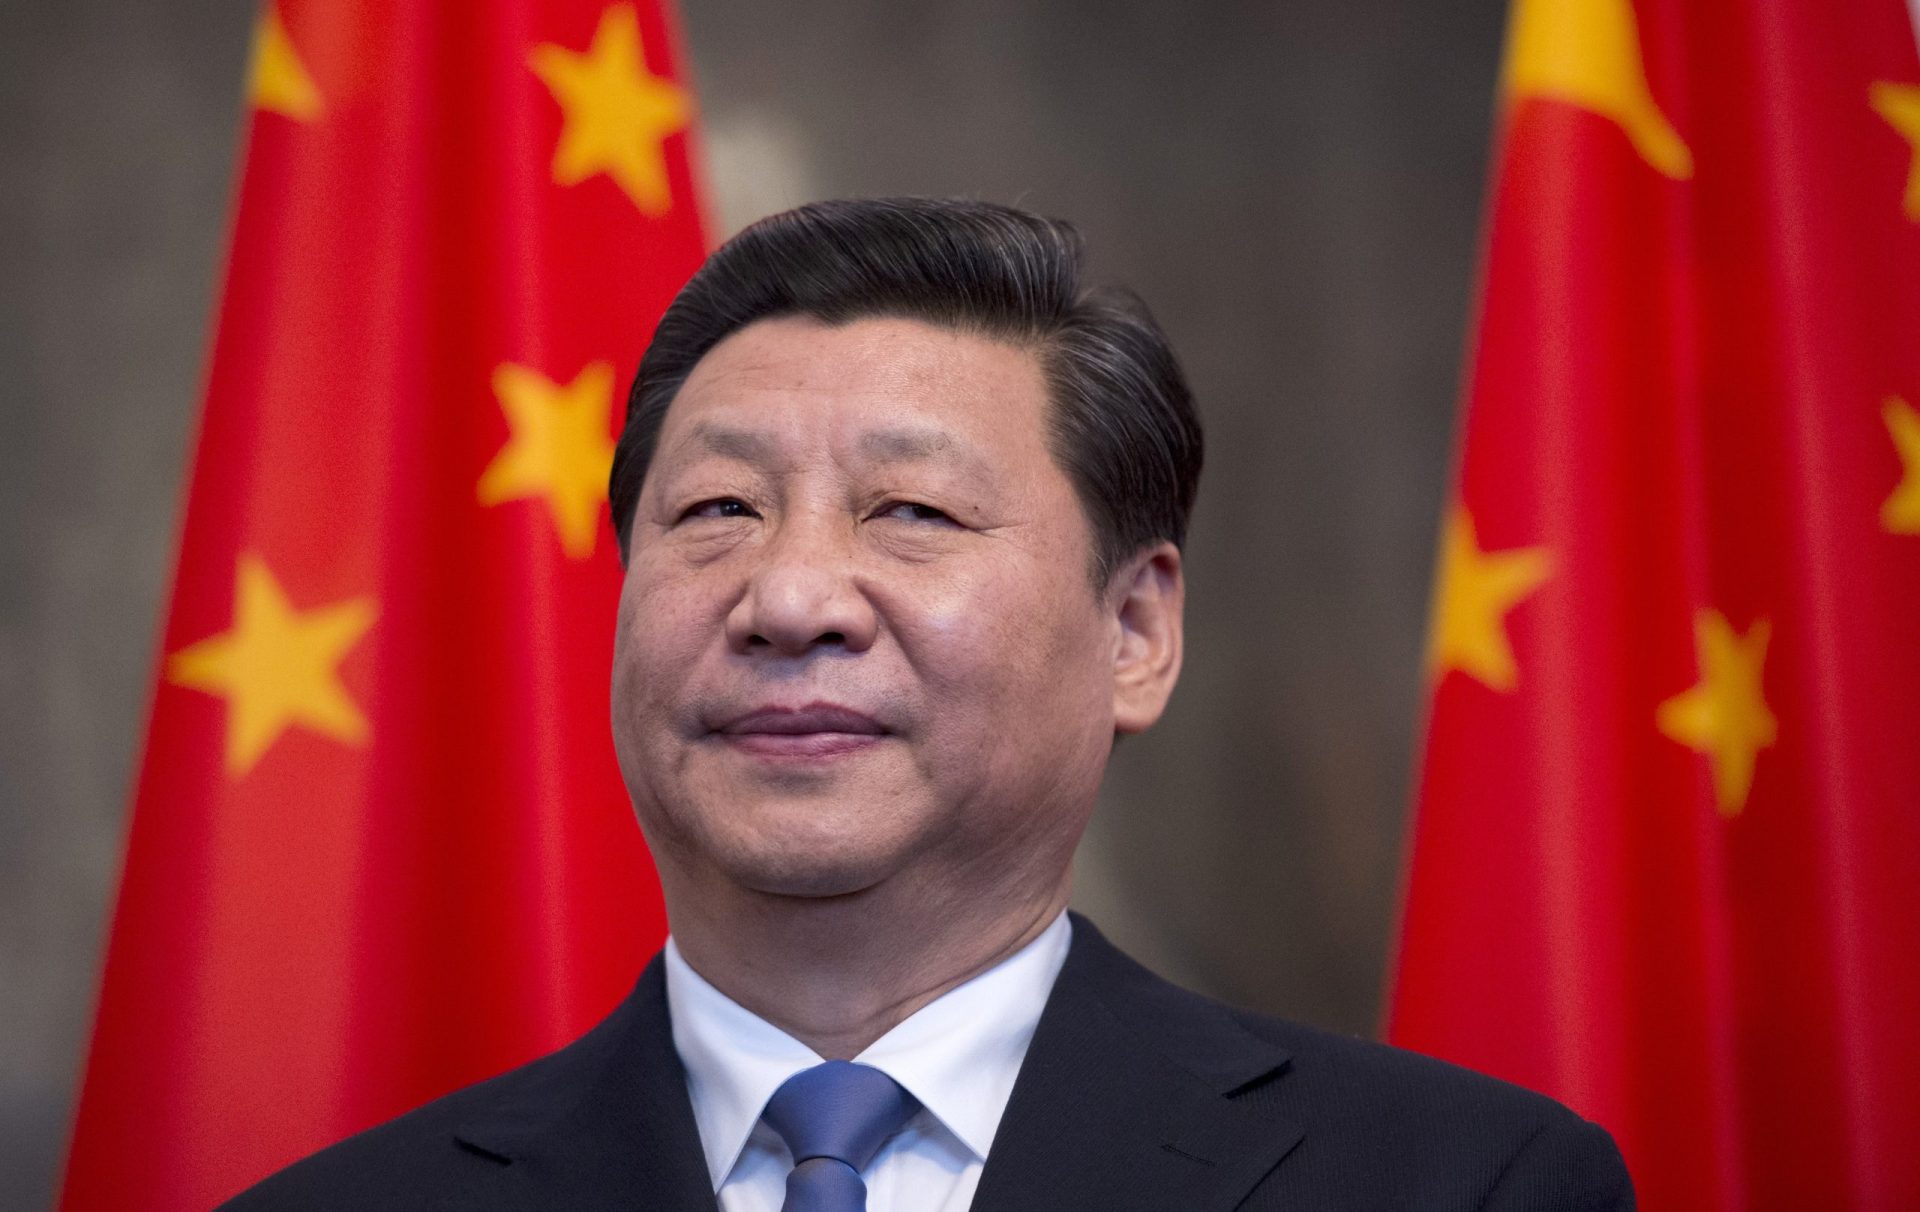 Xi Jinping felicita Costa pela nomeação para a presidência do Conselho Europeu